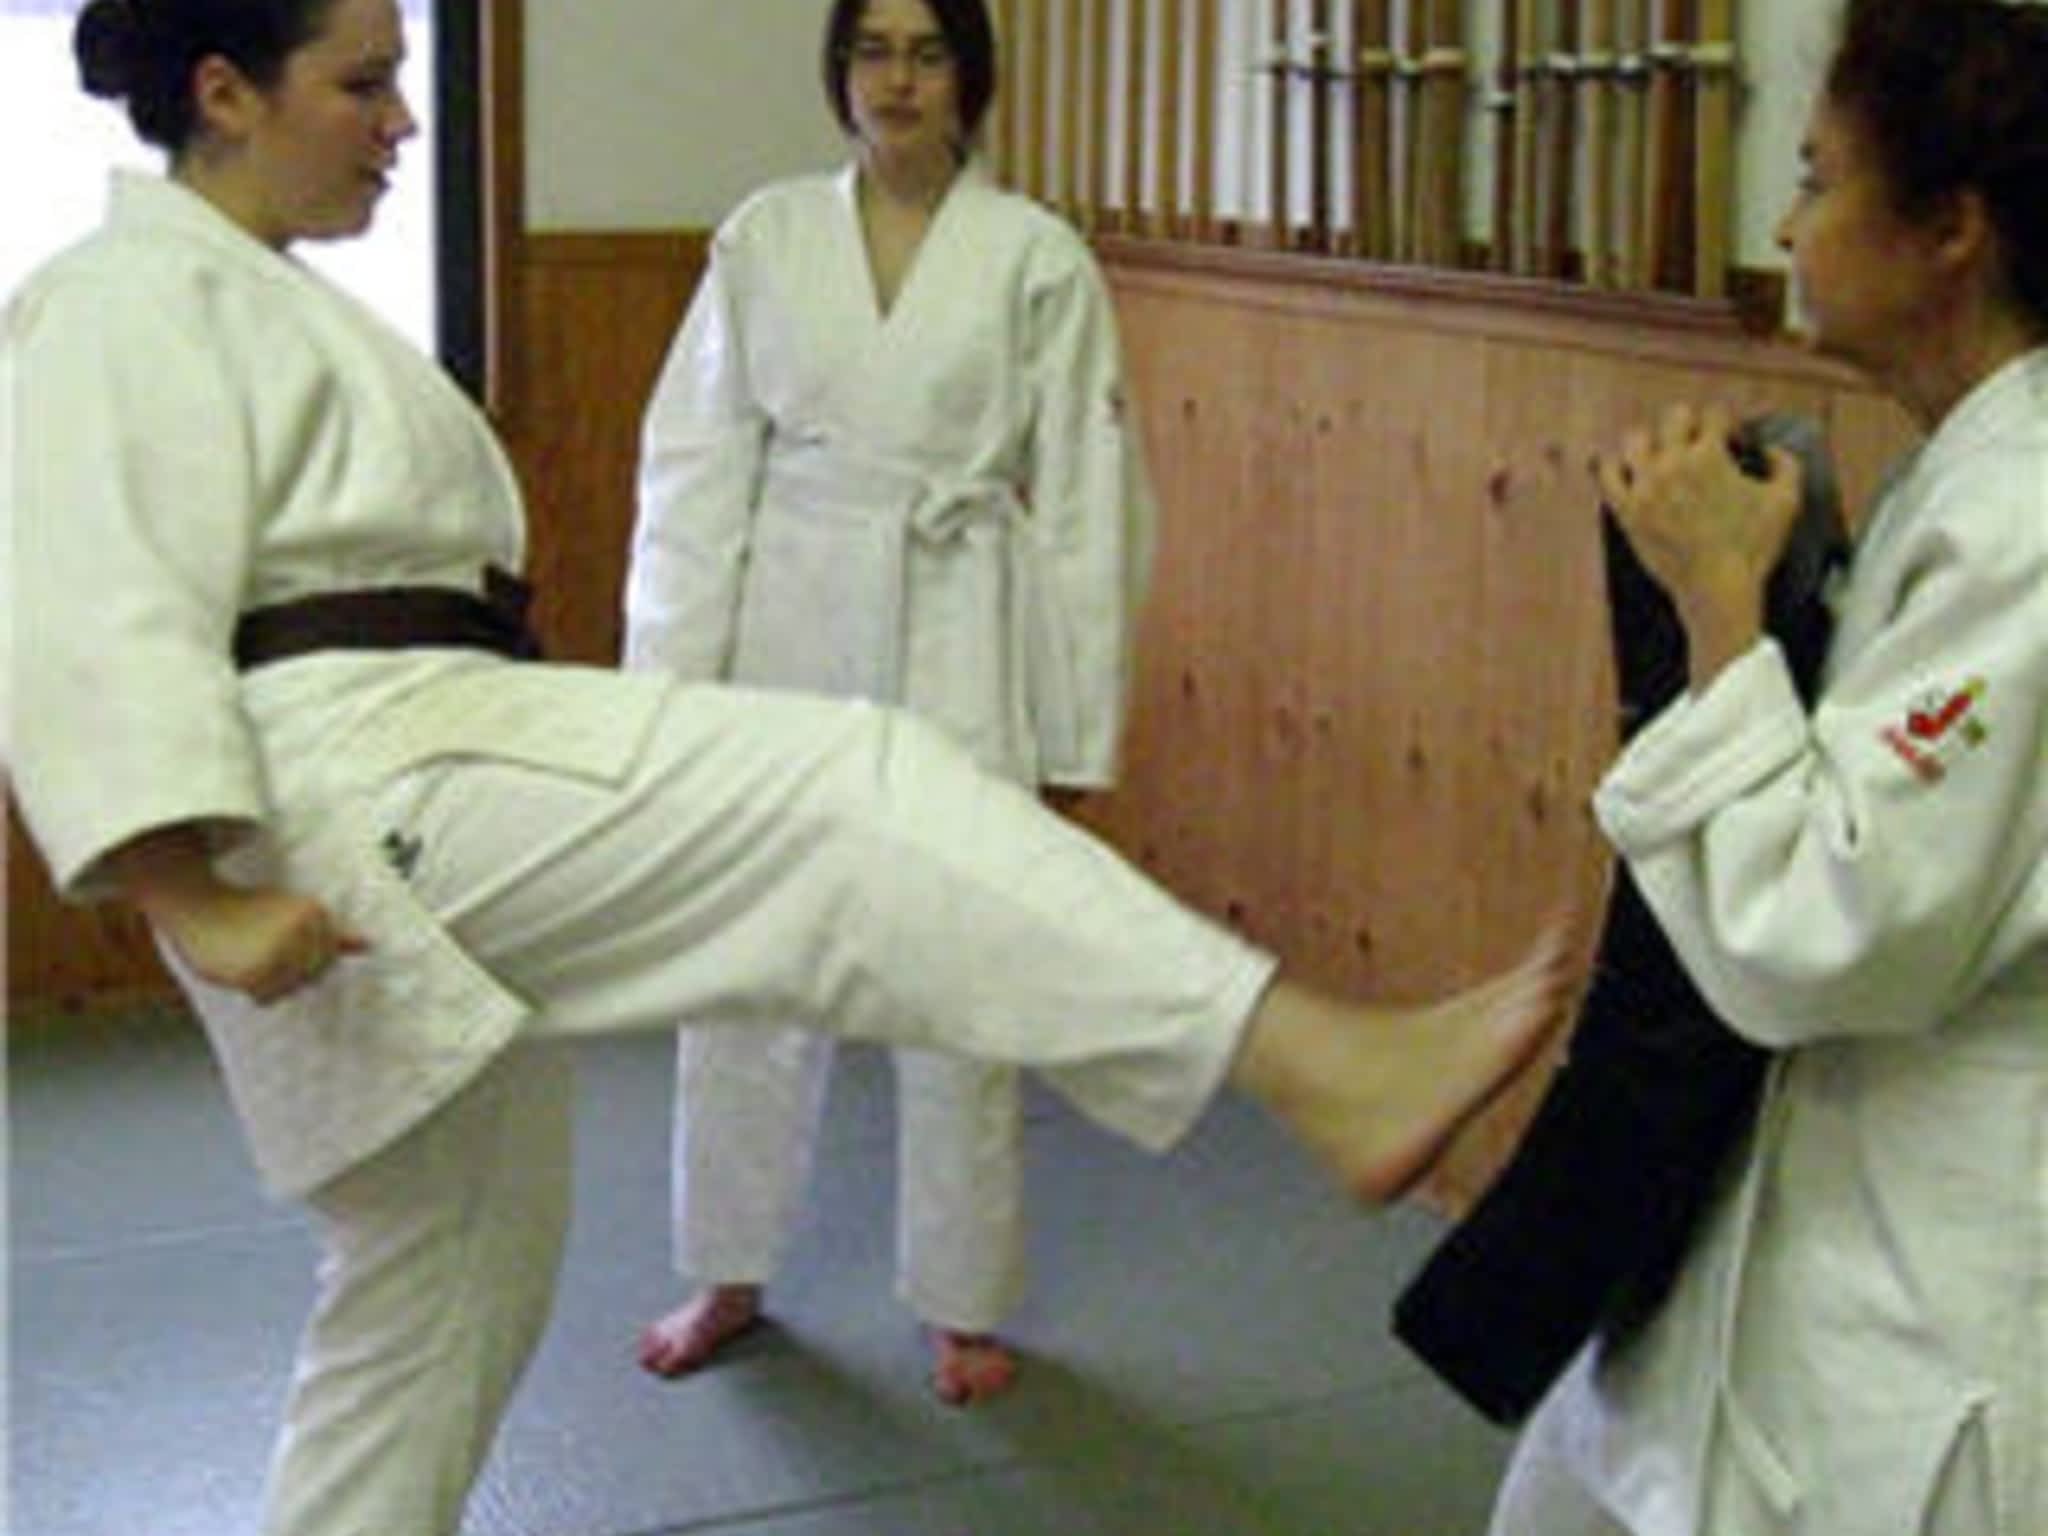 photo Academy of Martial Arts Tankyushin